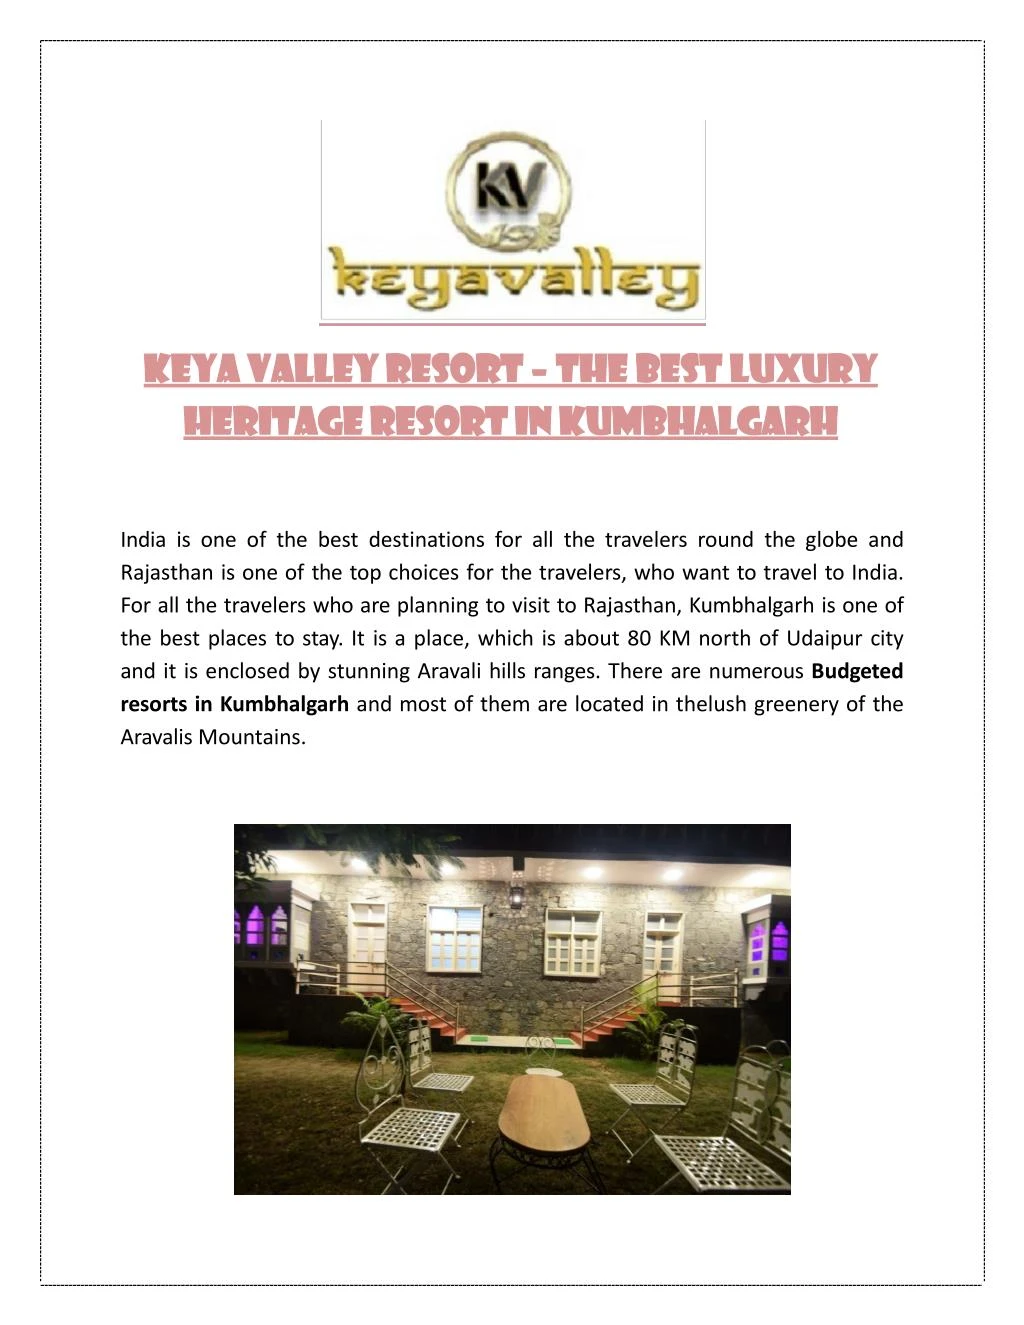 keya valley resort the best luxury heritage resort in kumbhalgarh